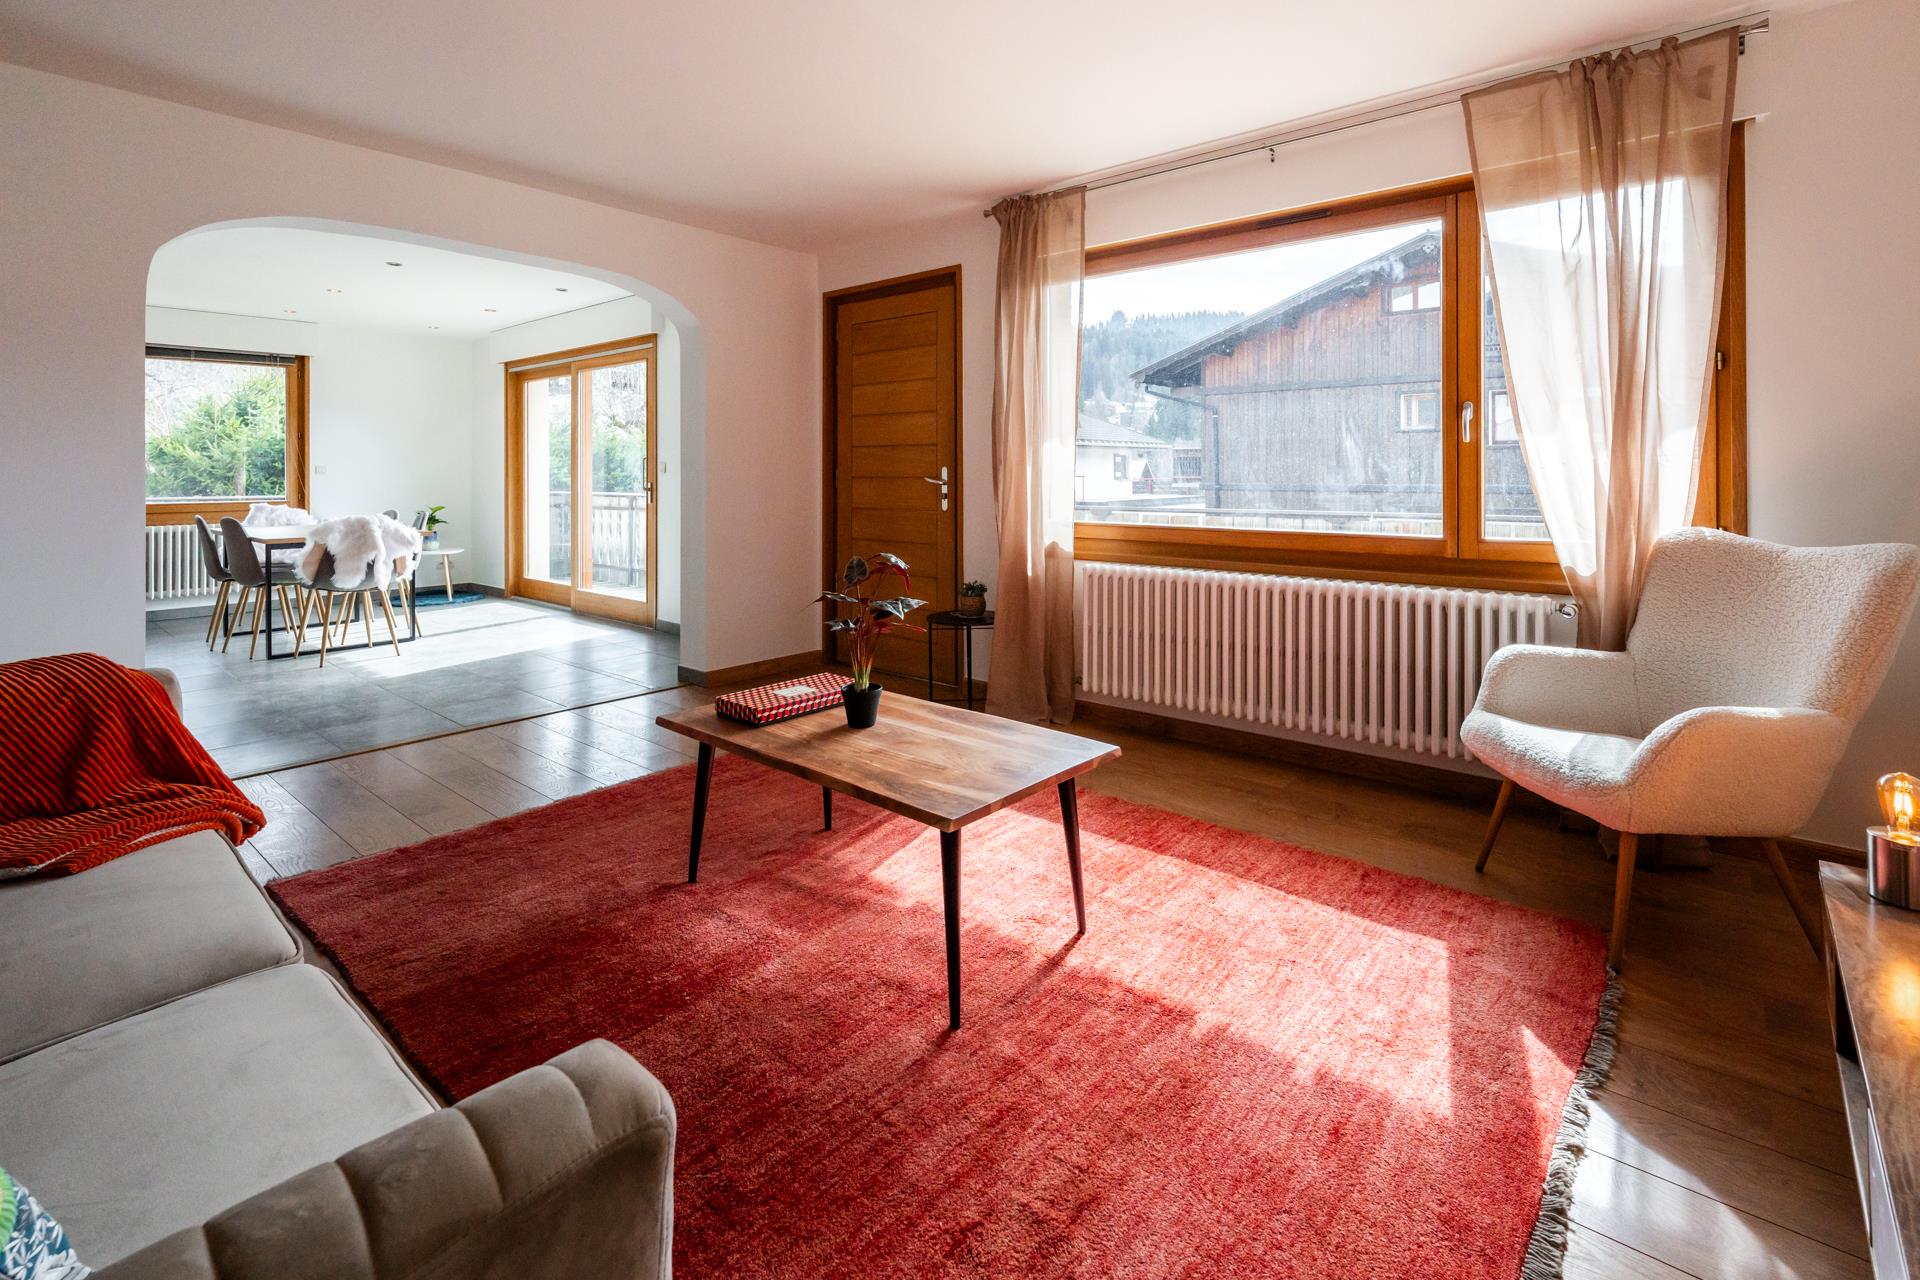 Appartement de 113 m² idéalement situé au coeur du village alpin des Gets profitant d'une superbe vu